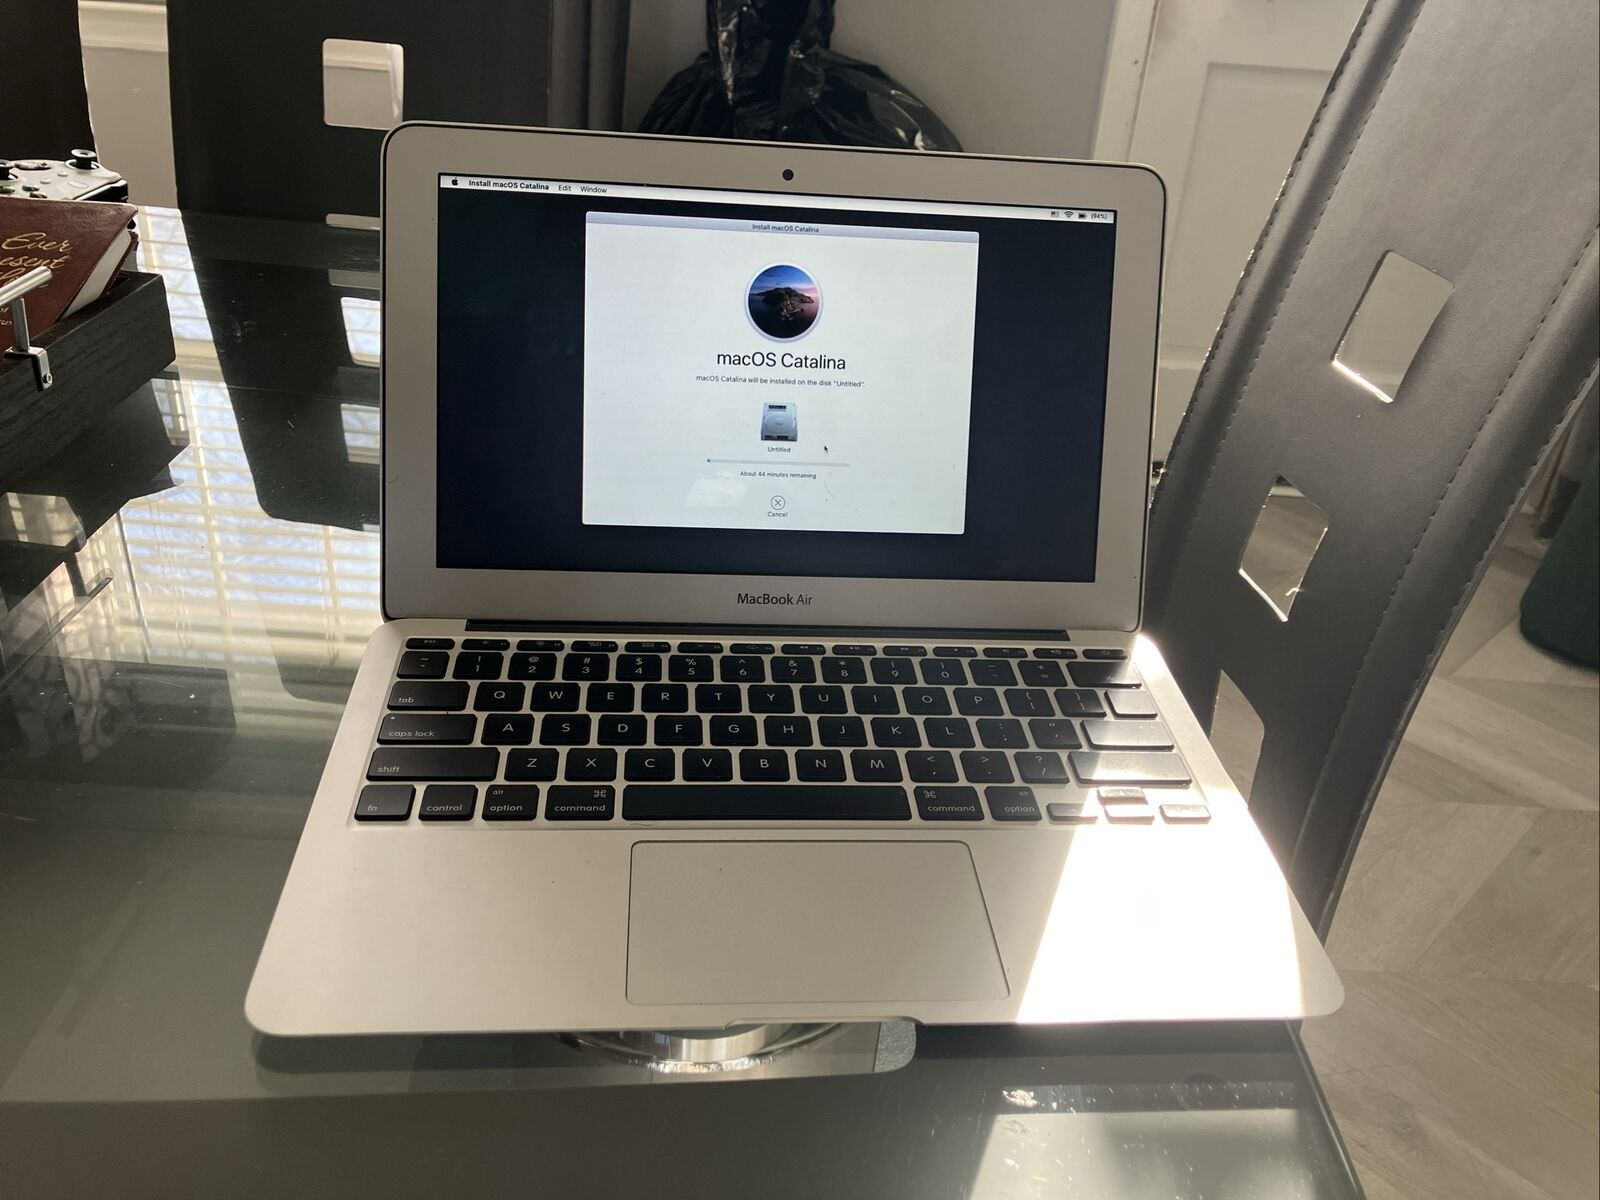 Apple MacBook Air 11.6 inch Laptop - MD223LL/A